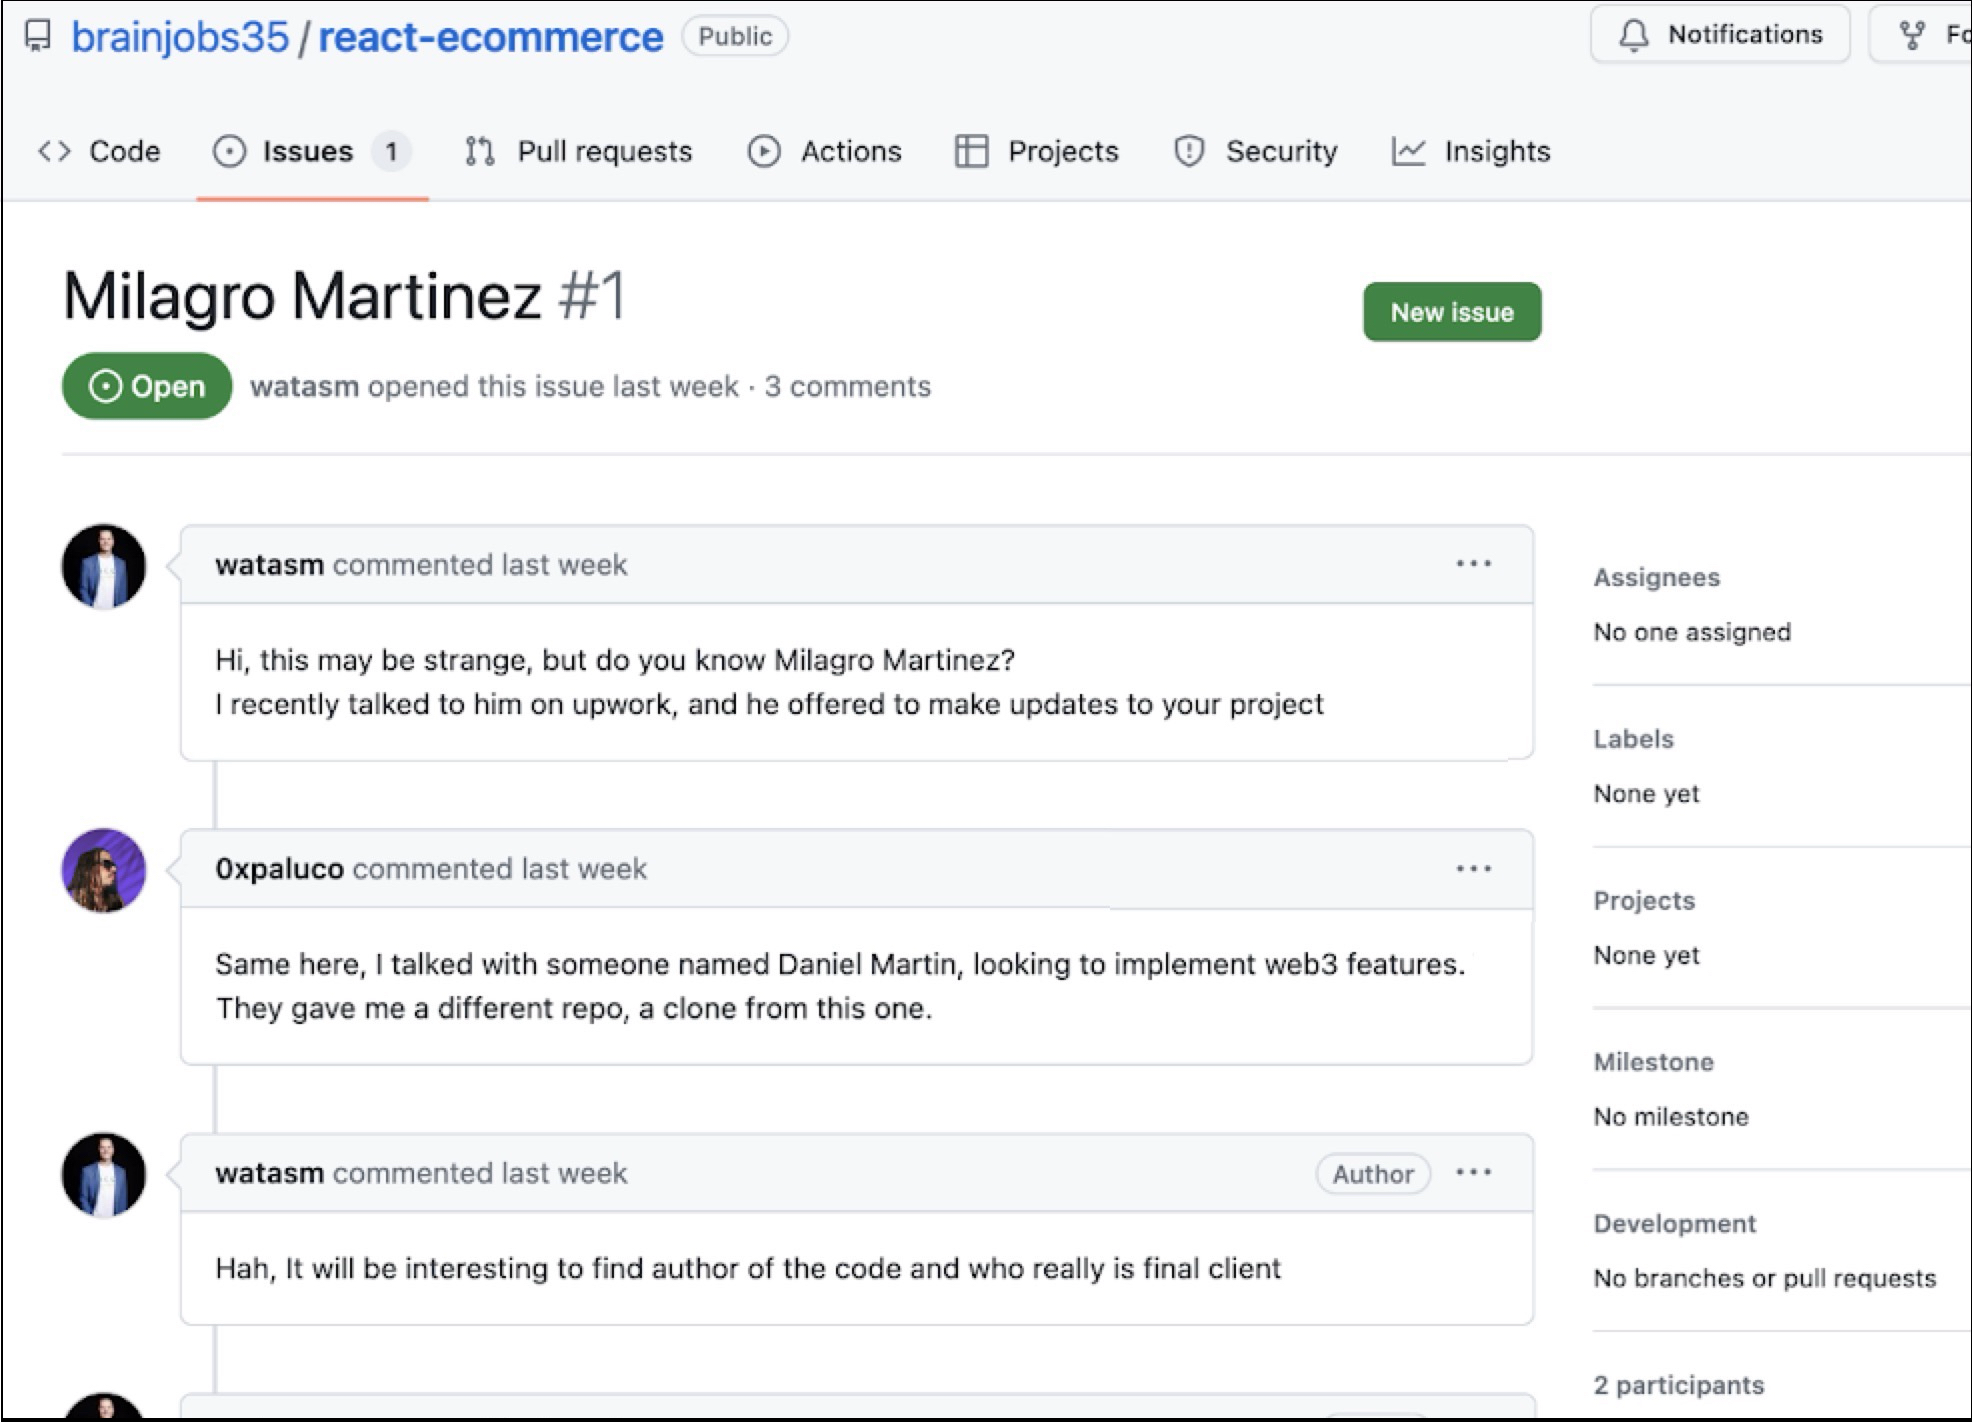 画像 2 は、brainjobs35 の react-ecommerce の GitHub ユーザー コメント ページのスクリーンショットです。Milagro Martinez #1. これはユーザー watasm とユーザー 0xpaluco の会話です。ここでは Milagroについて、またコードの作者がどうしたら見つかるかを議論しています。